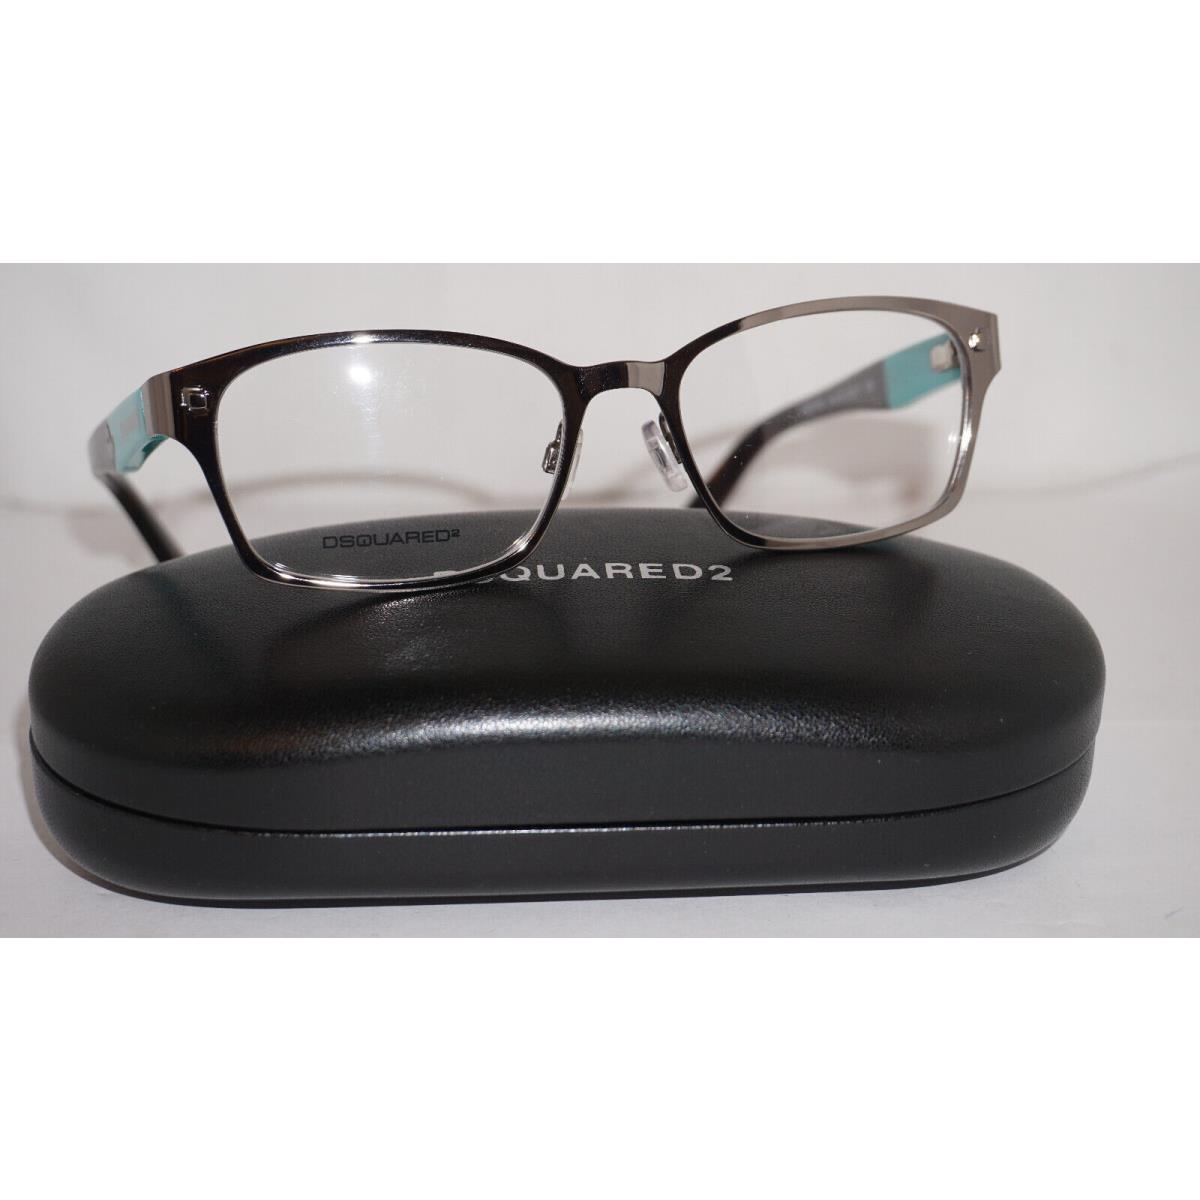 DSQUARED2 Eyeglasses Silver Tiffany DQ5100 012 52 17 135